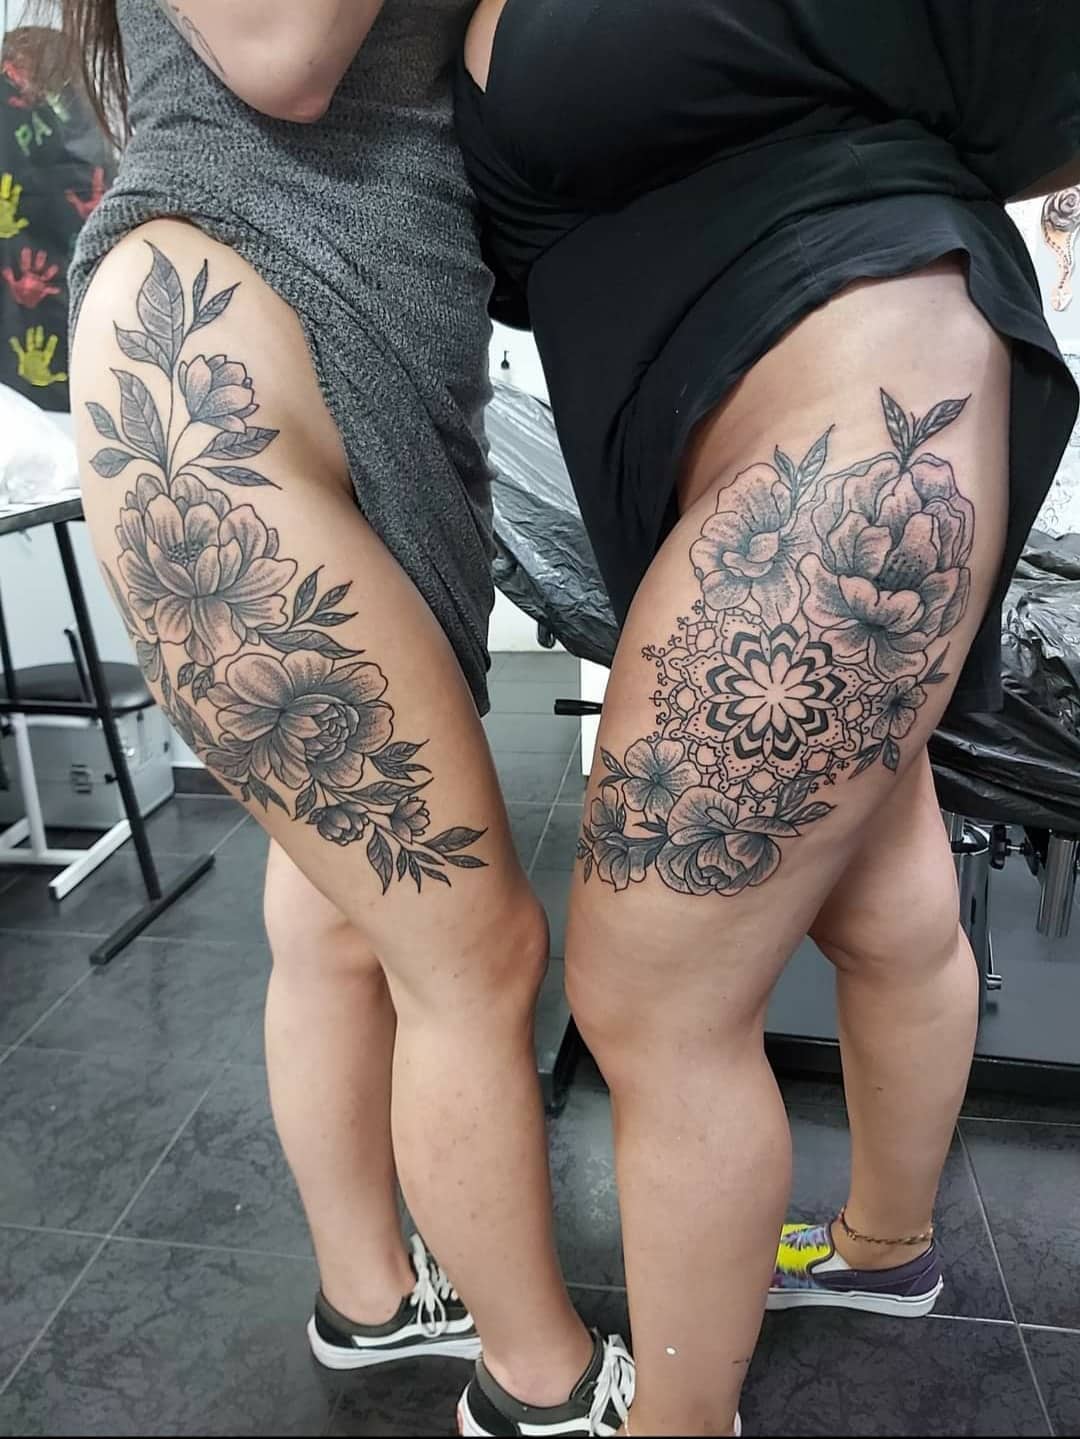 estevam-pinho-tattoo-artist-flowers-2-legs